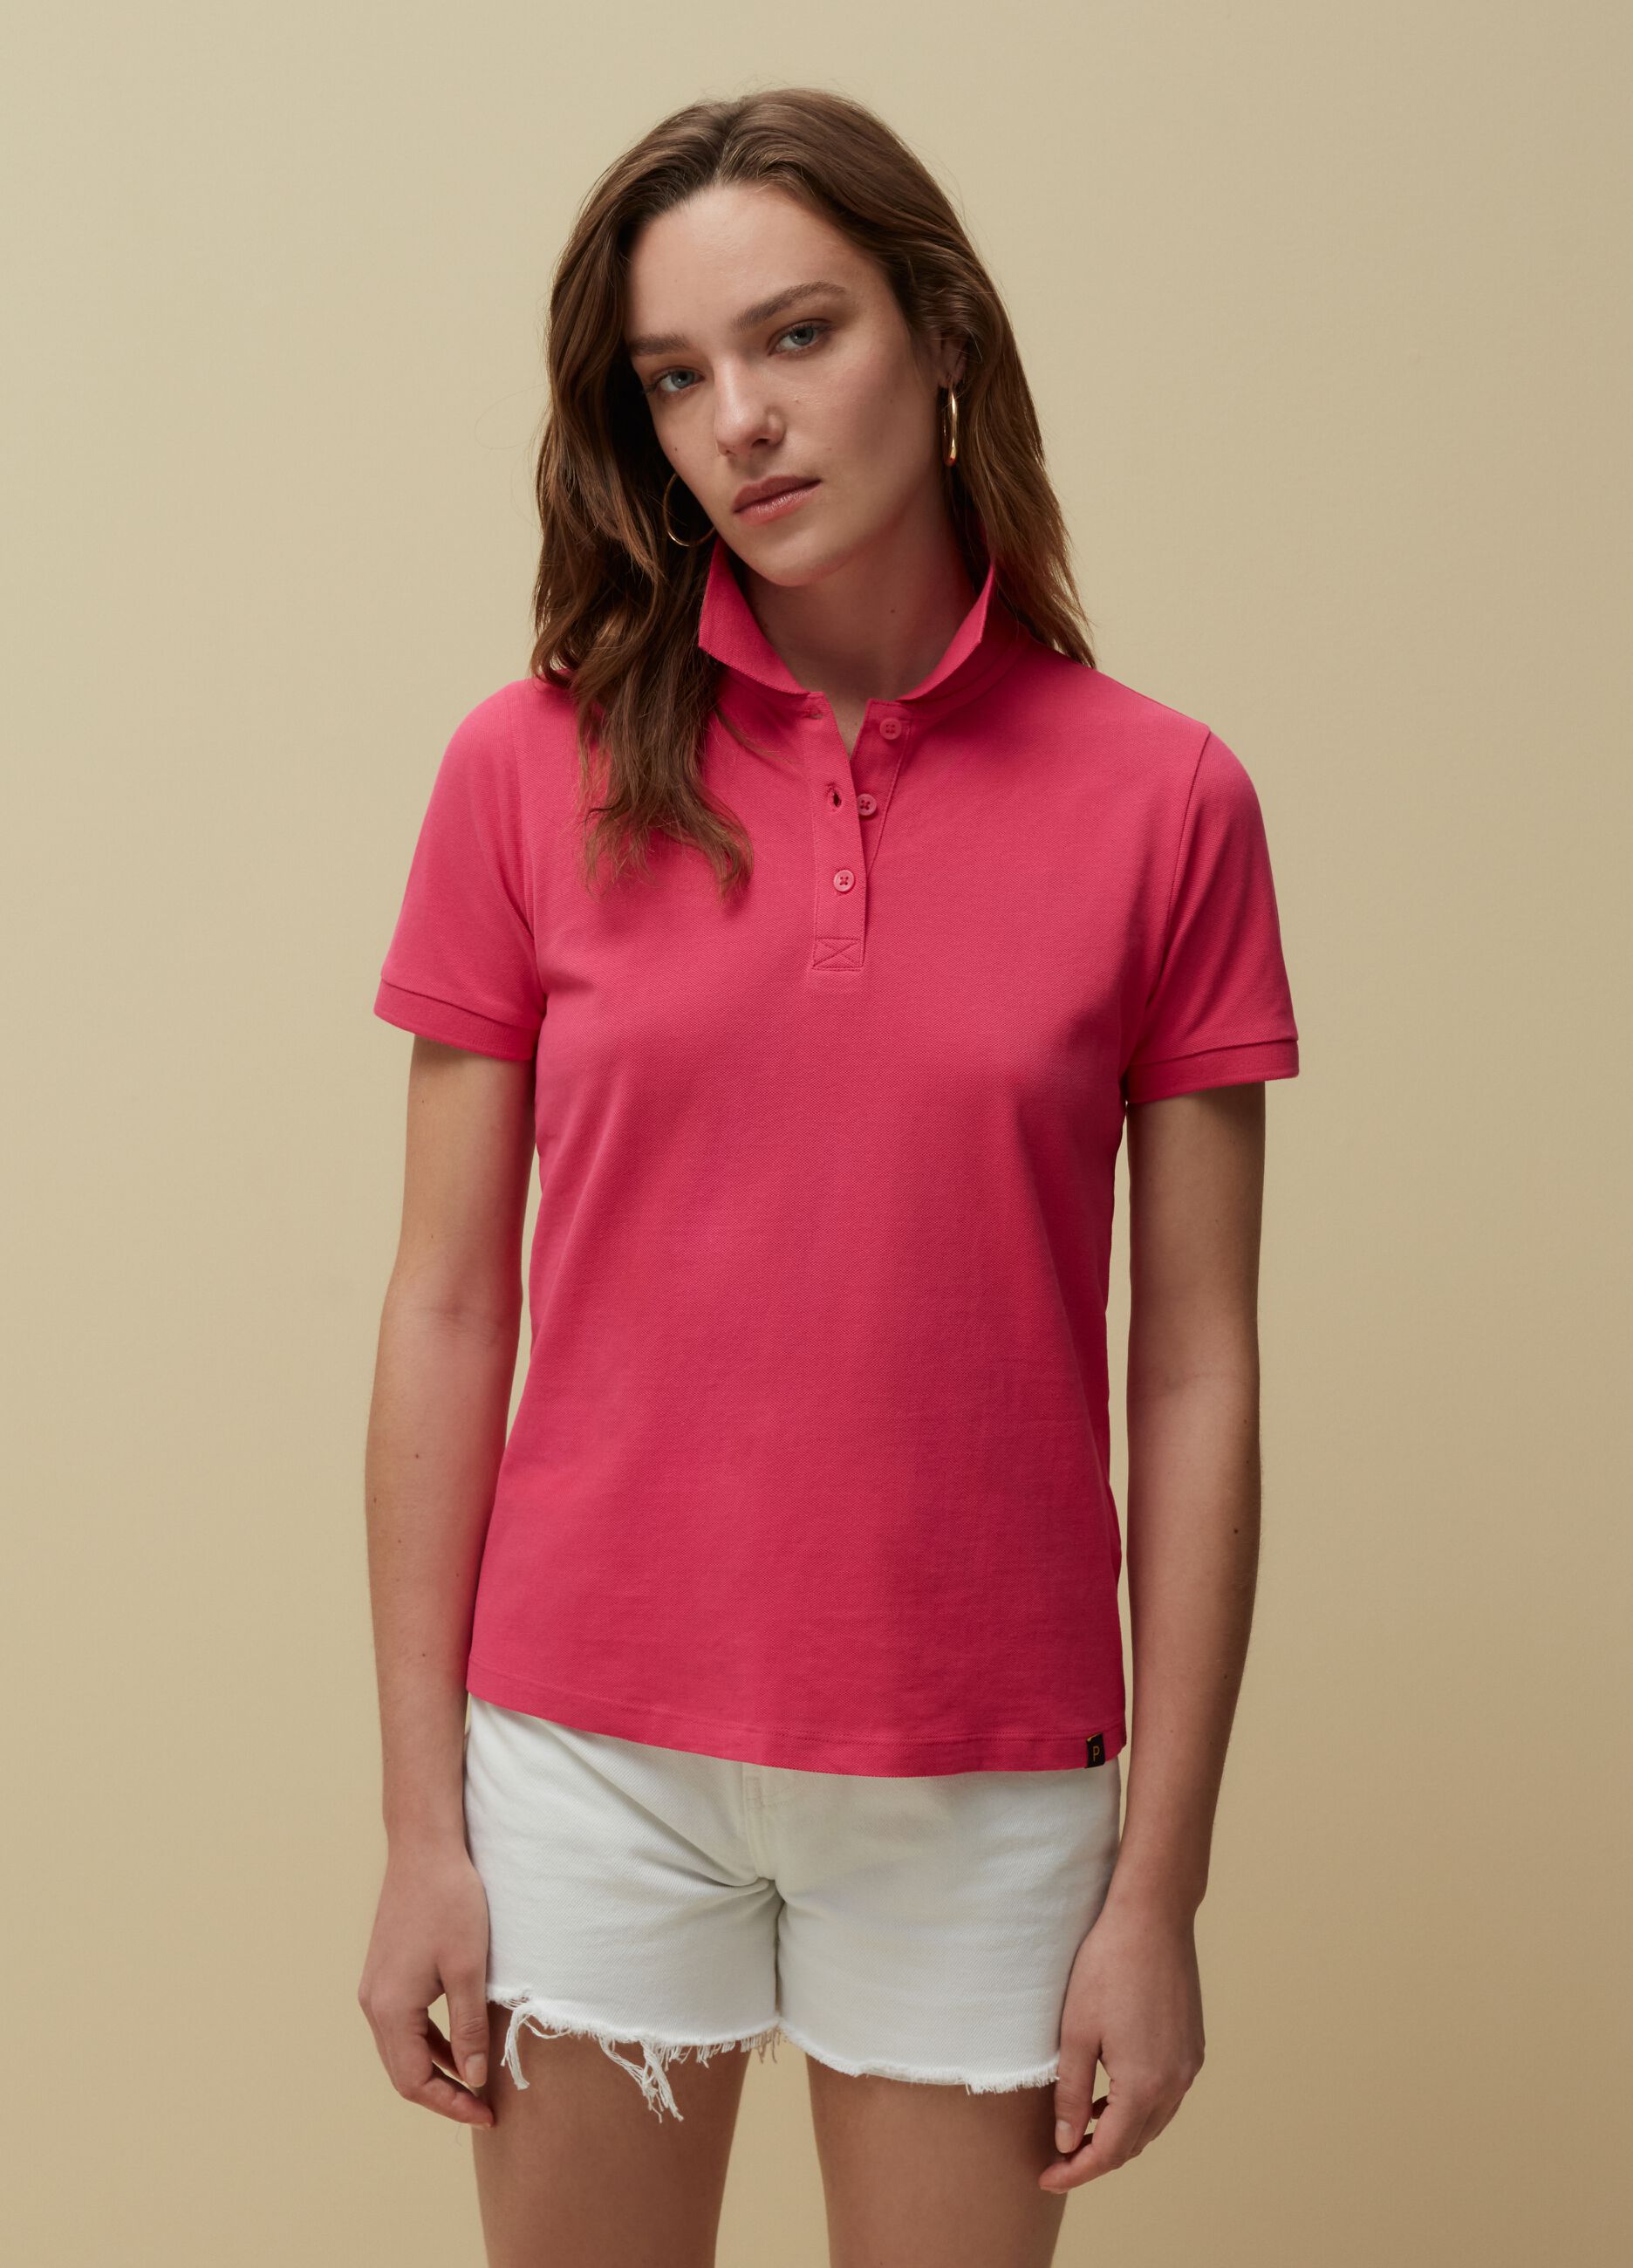 Solid colour pique polo shirt